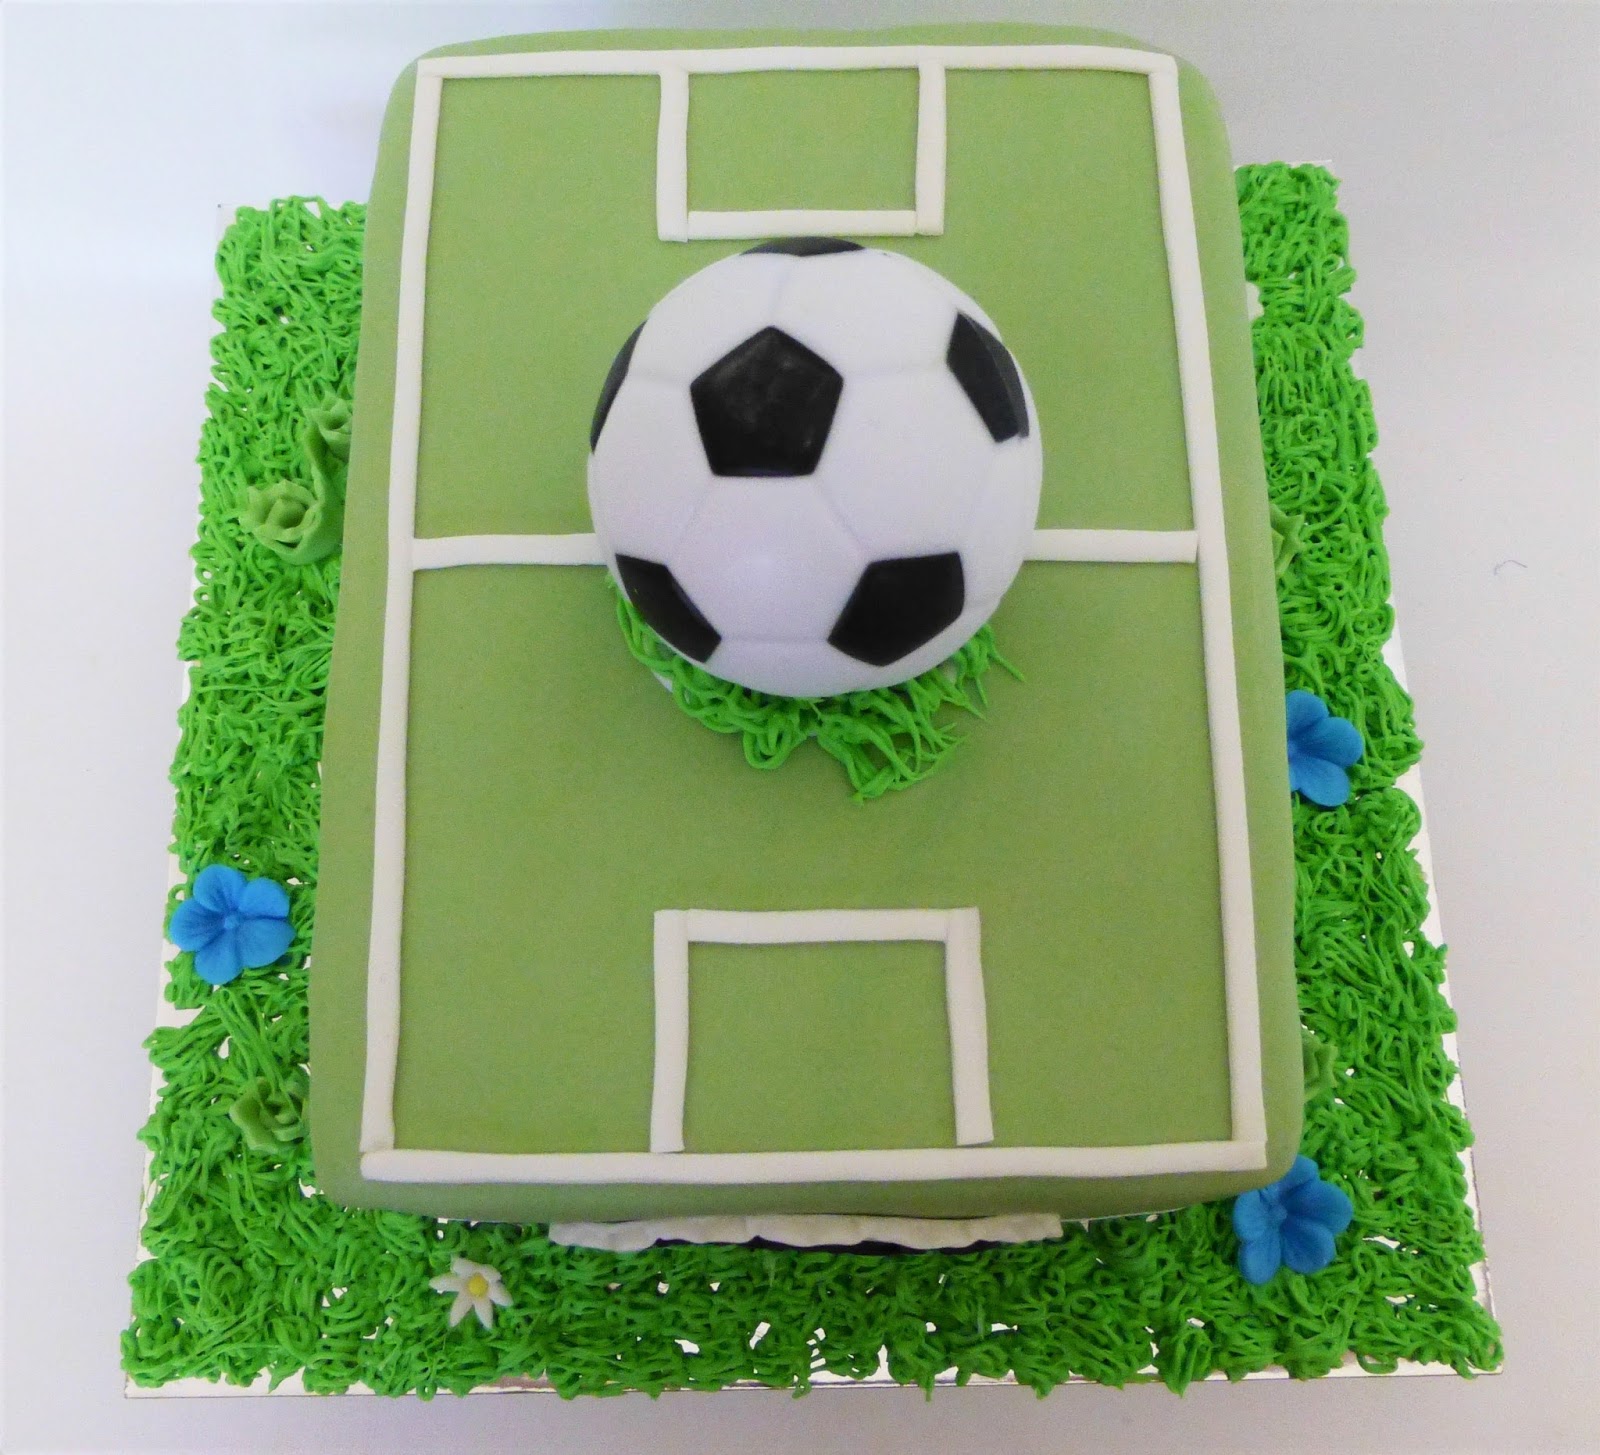 CakeSophia: Soccer cake